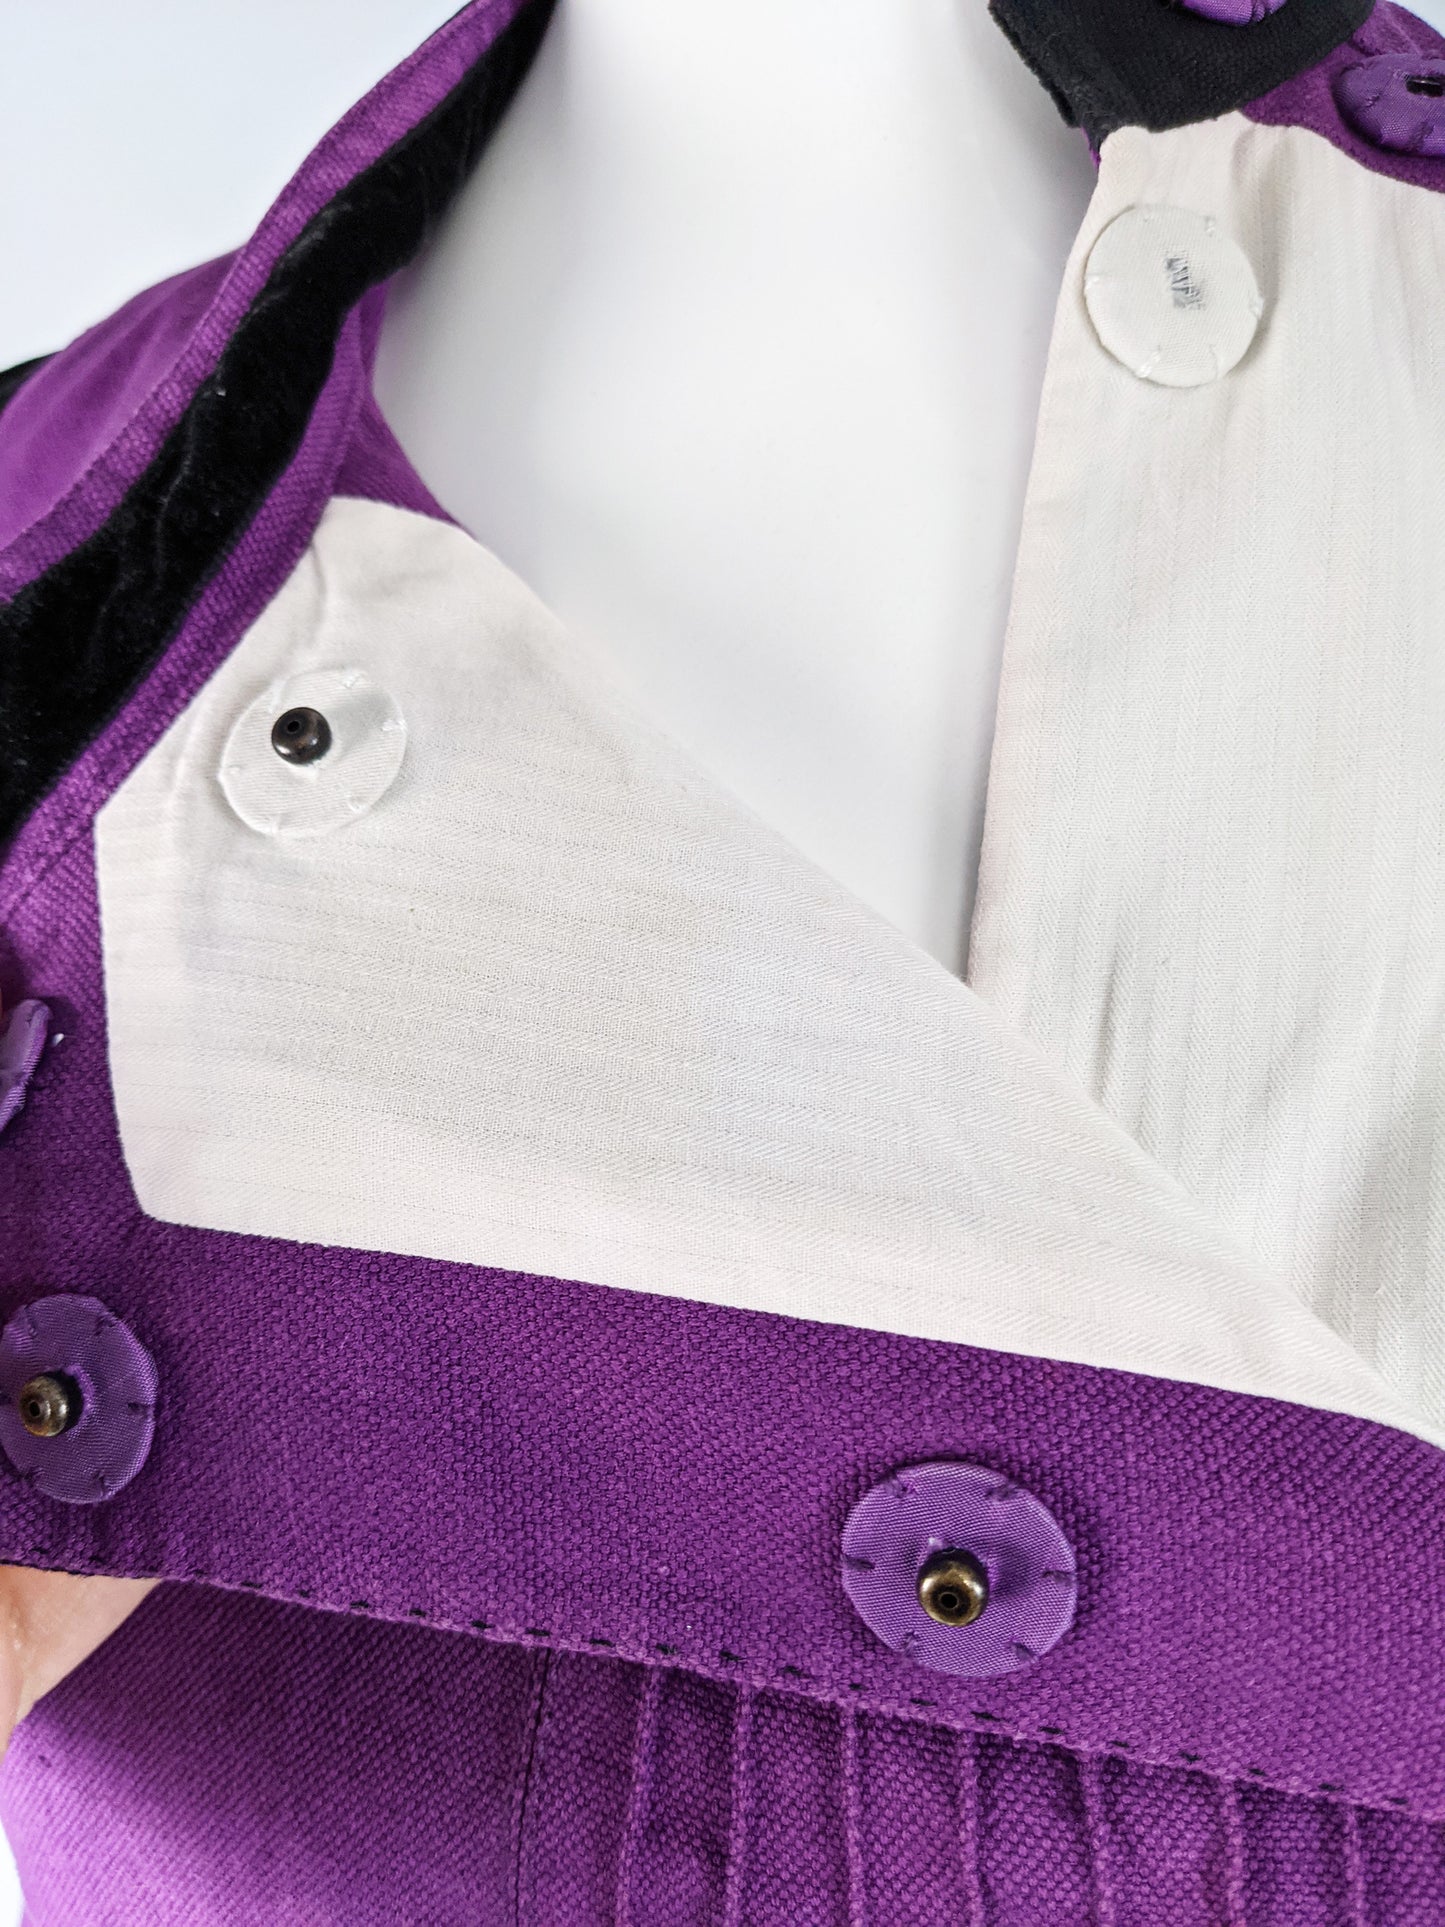 Purple Linen & Velvet  Womens Jacket, A/W 2005